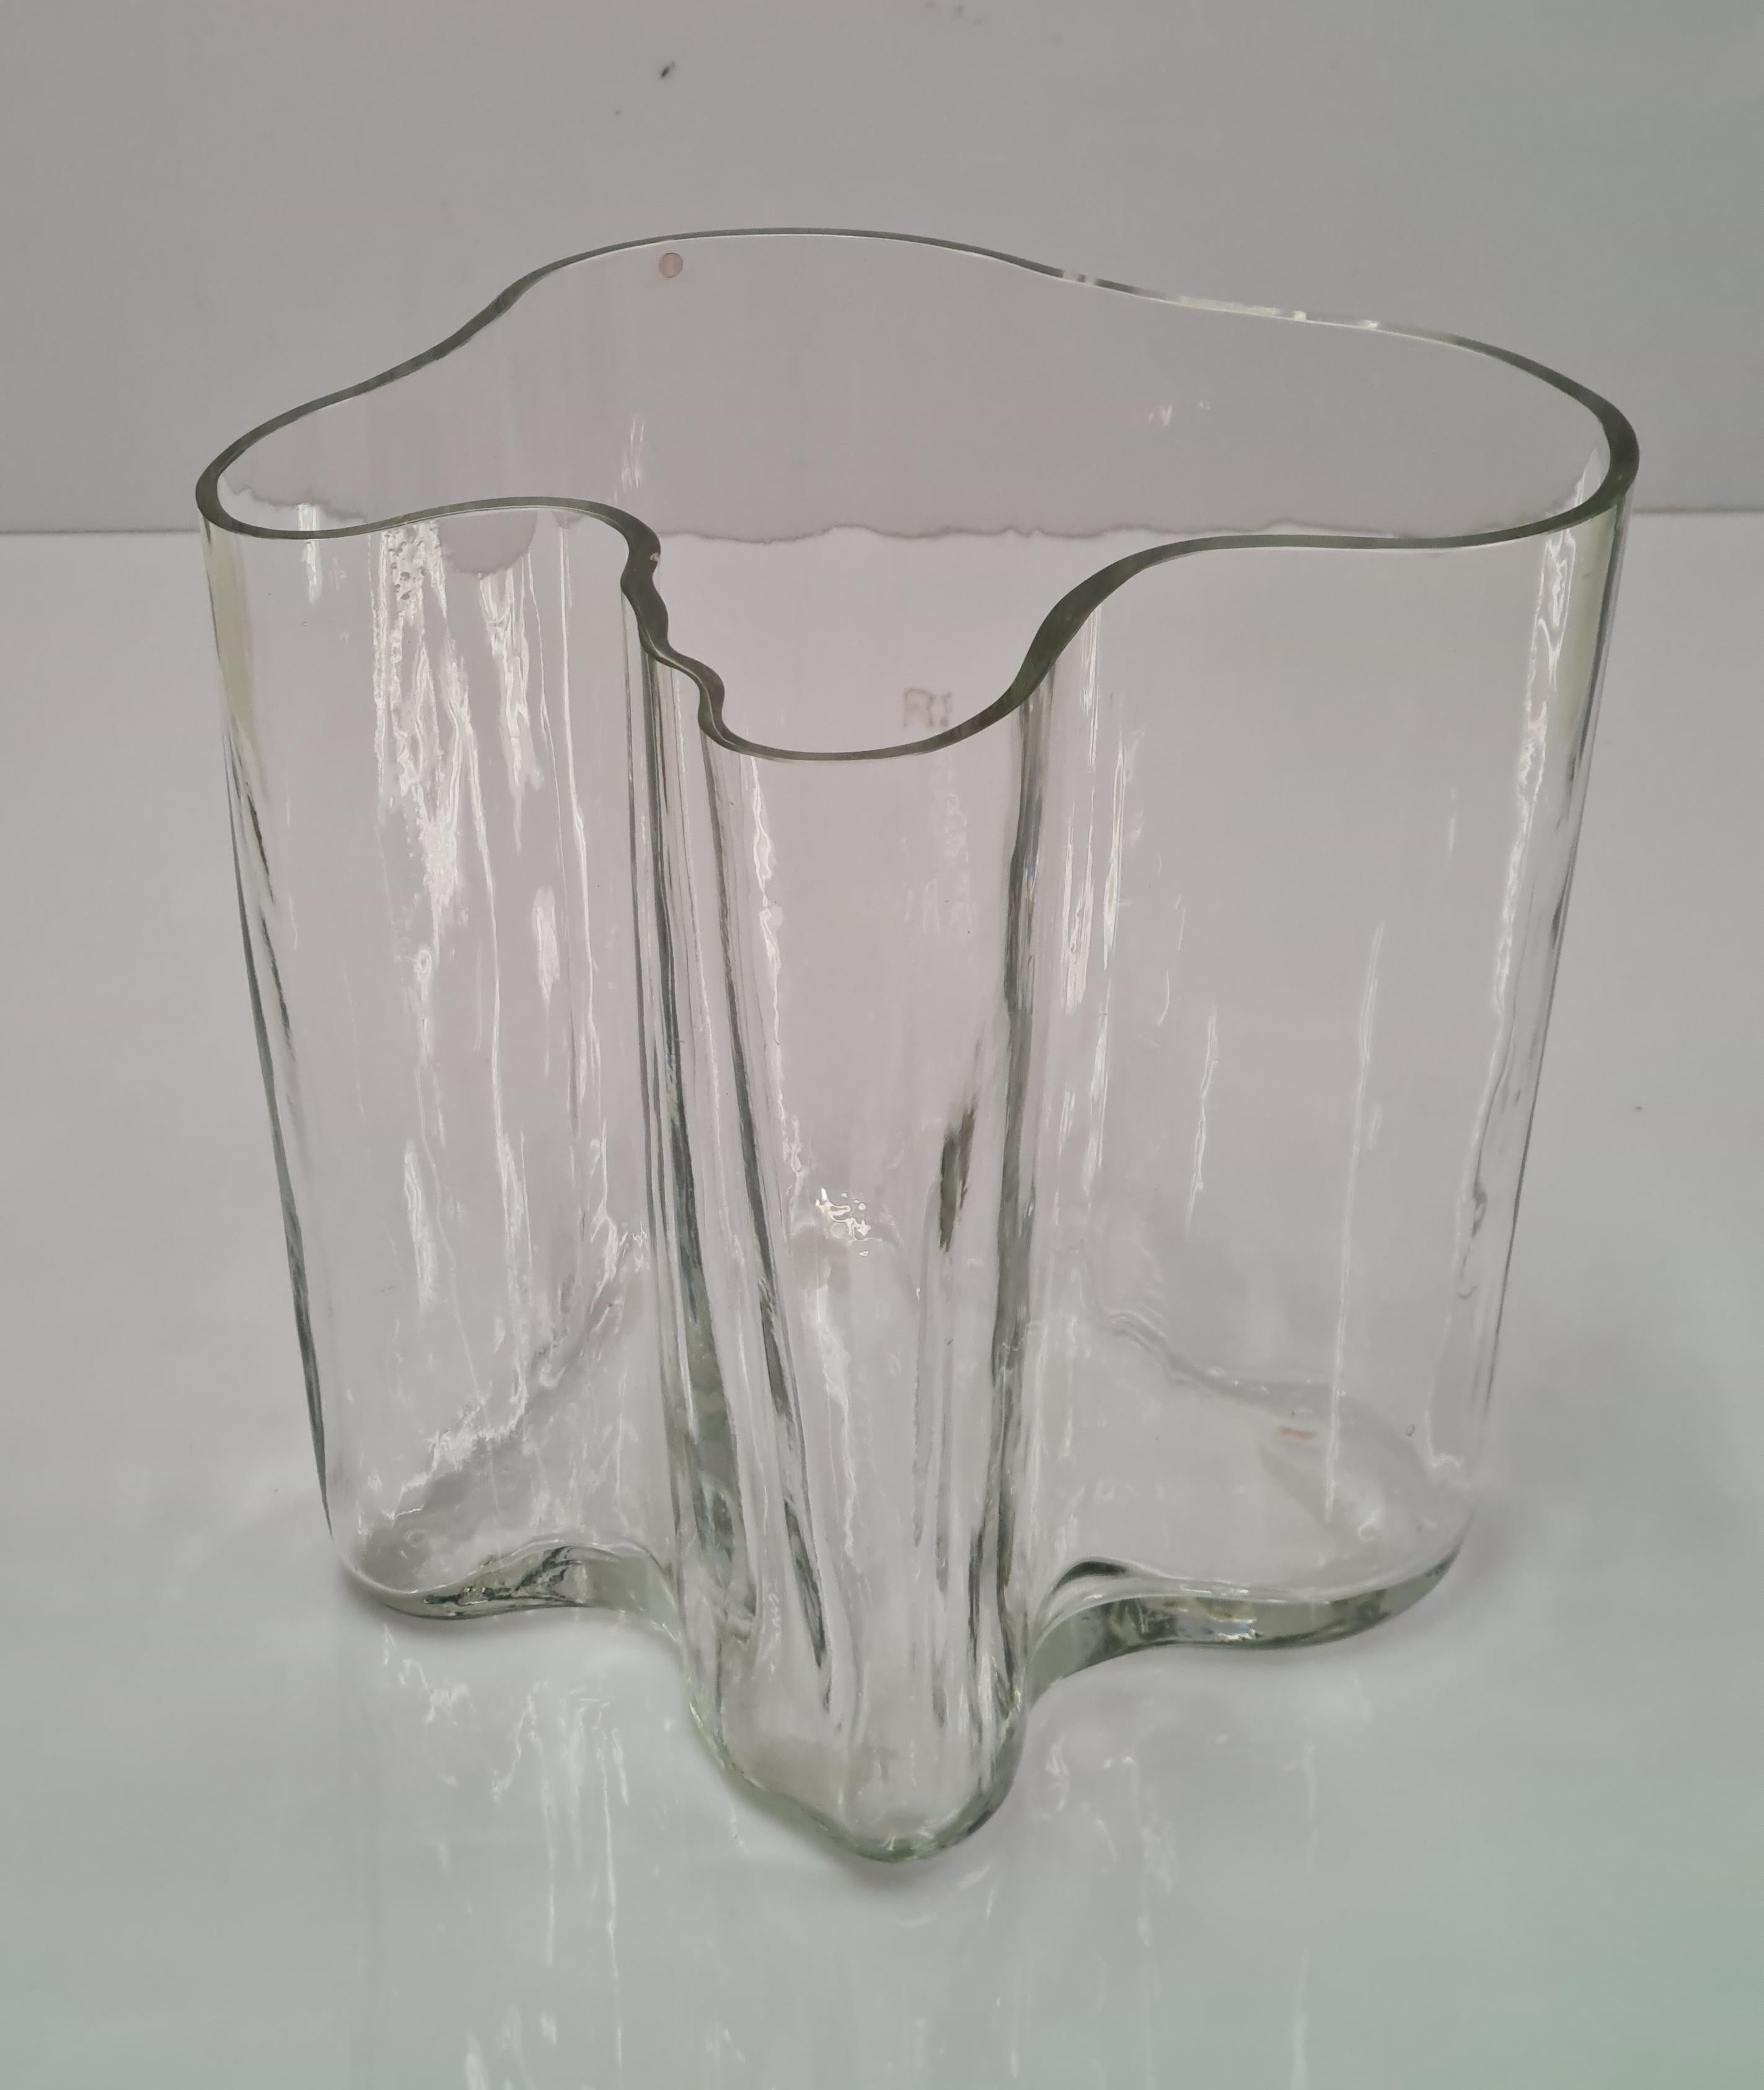 Alvar Aalto nahm an einem Wettbewerb in der Glasfabrik Karhula-Iittala teil, der anlässlich der Pariser Weltausstellung 1937 veranstaltet wurde, und gewann ihn. Das Jahr war 1936 und Aaltos Beitrag hieß 